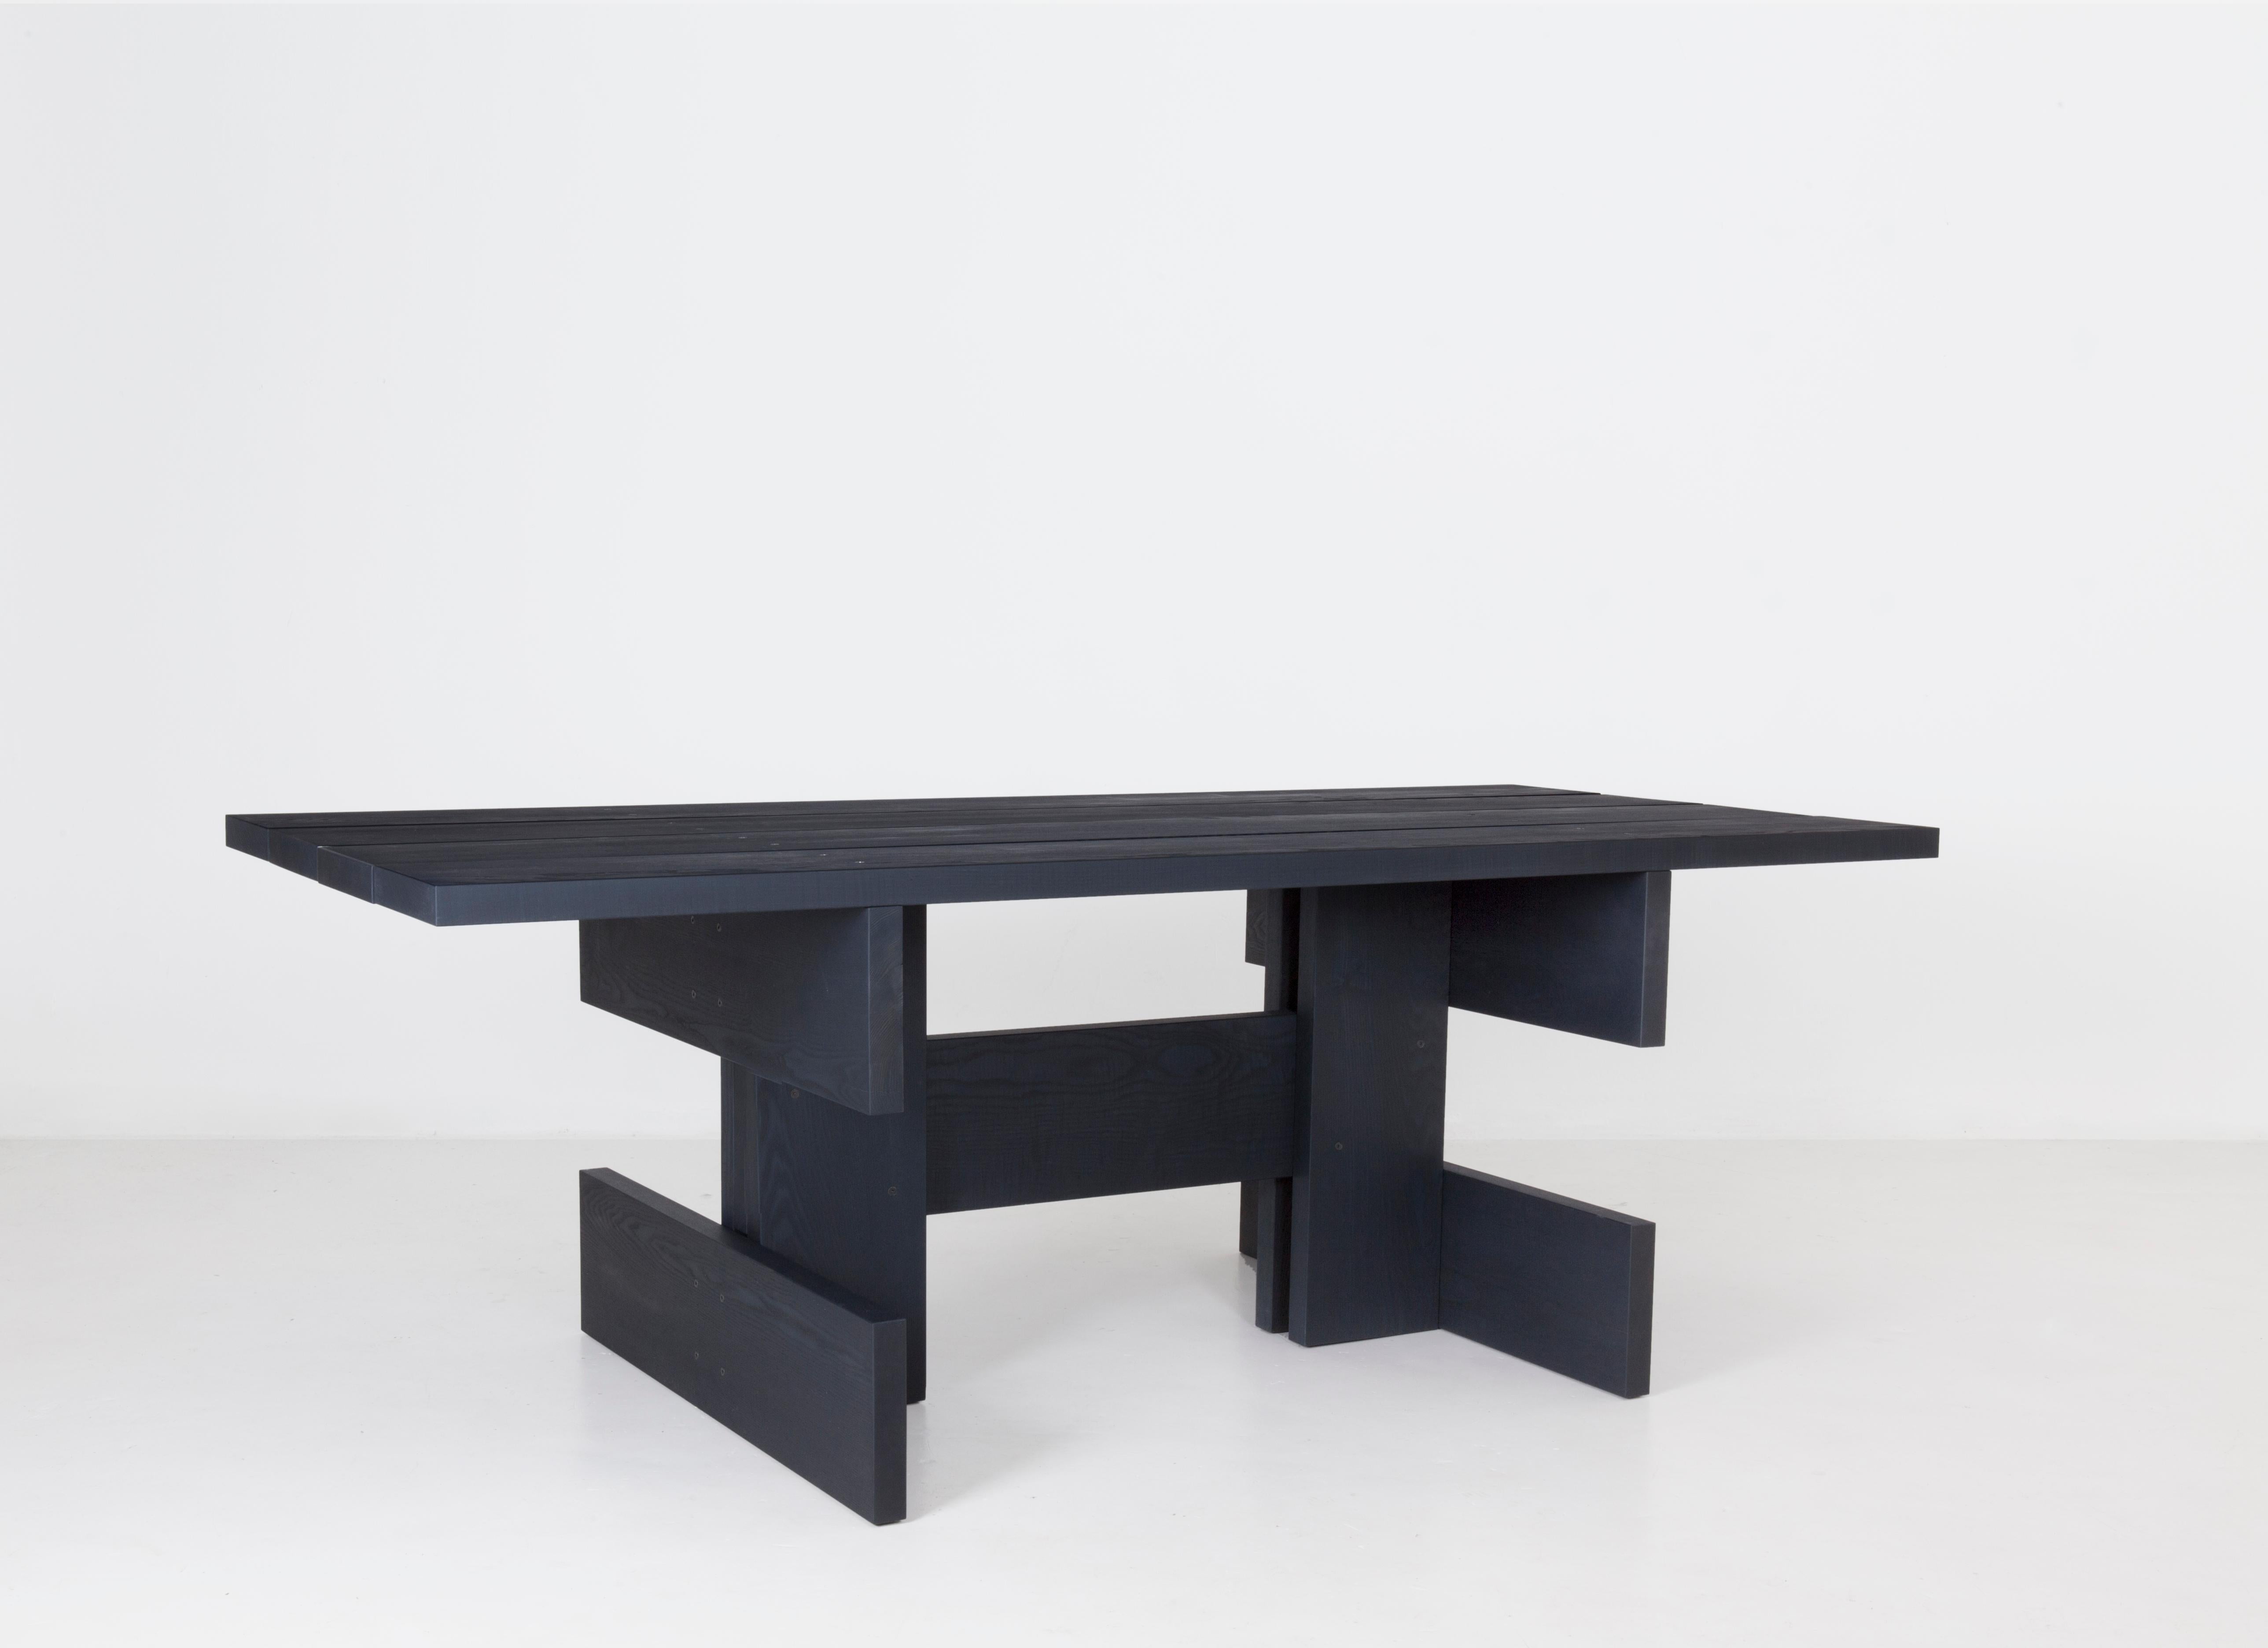 Une table à manger en bois audacieuse. Tous ses éléments : base, pieds, plateau sont basés sur le même profil de planche et ensuite reliés entre eux. Le caractère construit donne à Plank un attrait plutôt architectural. Il se pose comme une enclume